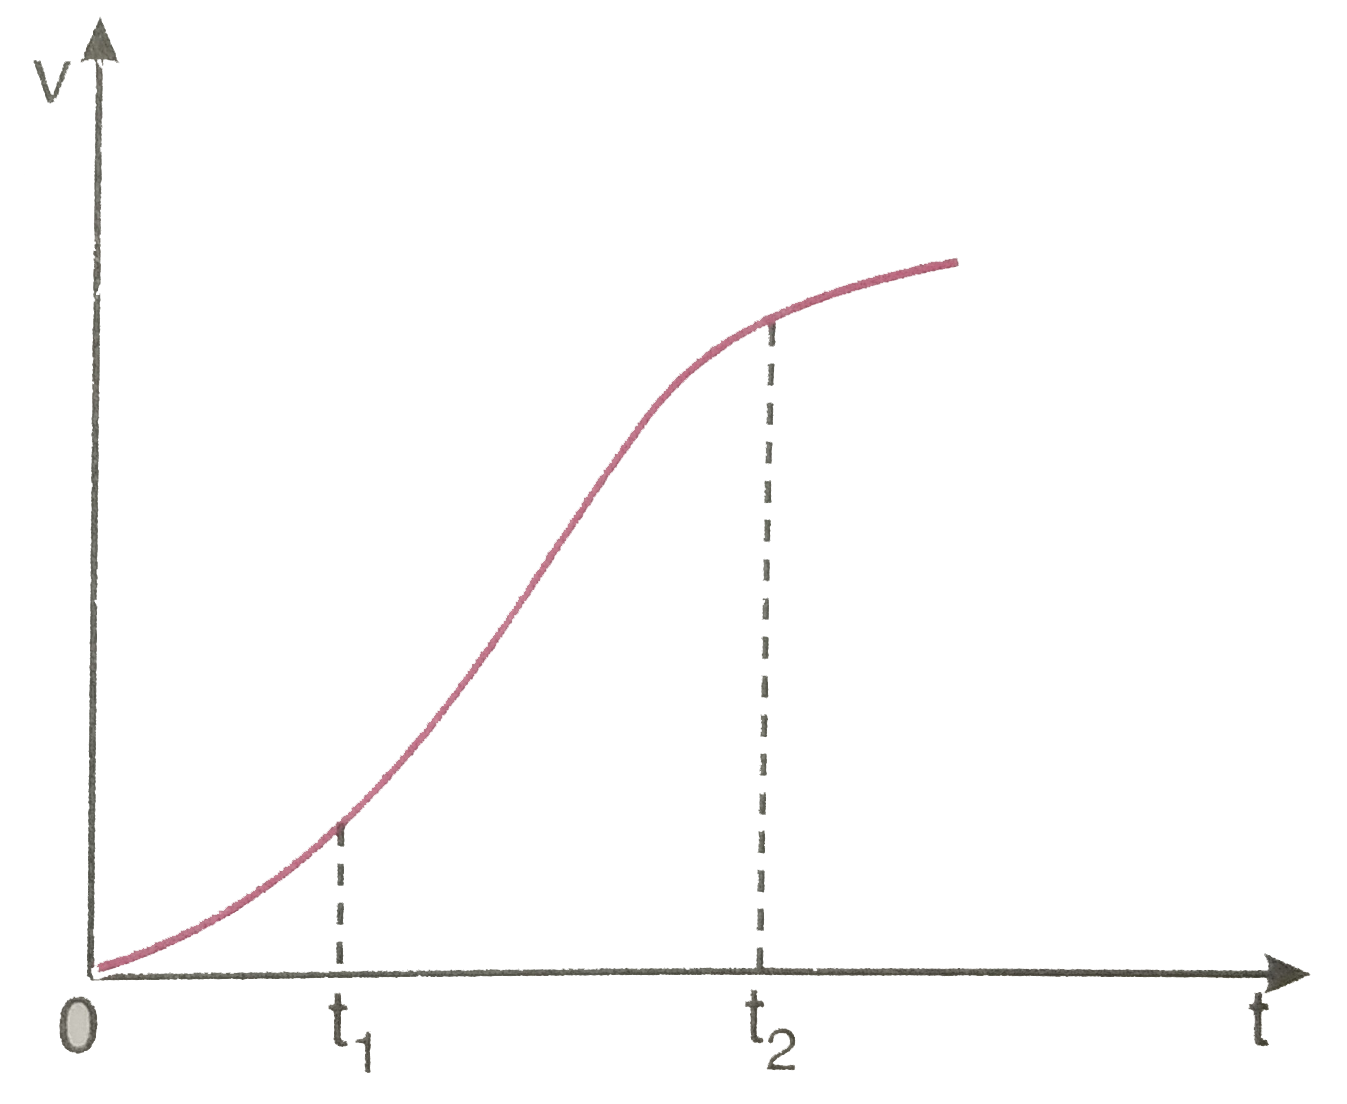 एक विमीय गति में किसी का वेग - समय ग्राफ चित्र 3.62 में दिखाया गया है नीचे दिए सूत्रों में t(1) से t(2) तक के समय अंतराल की अवधि में कण की गति का वर्णन करने के लिए कौन-से सूत्र सही है   a(